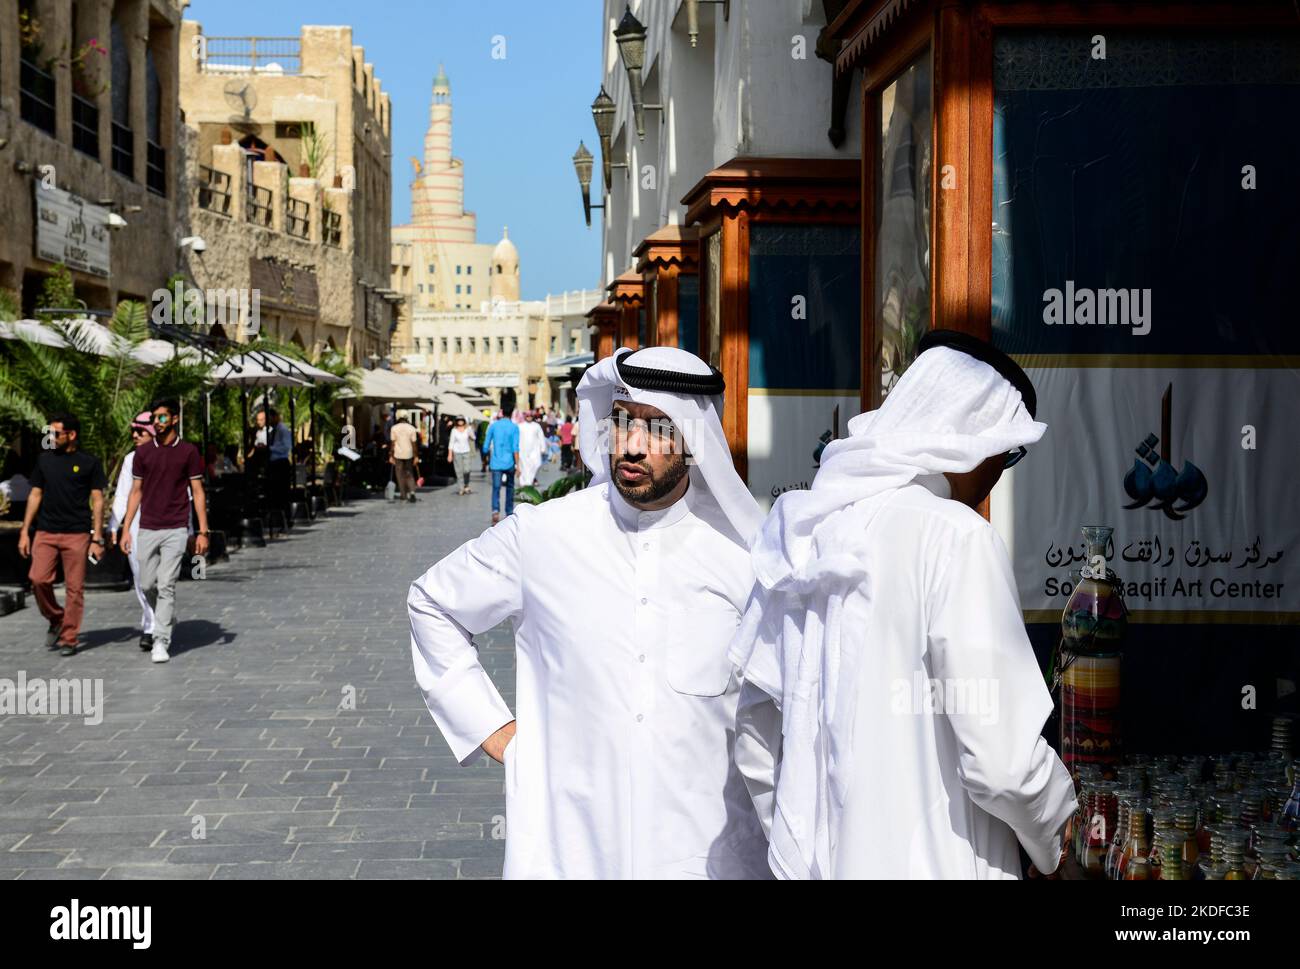 QATAR, Doha, bazar Souq Waqif and Fanar, behind tower of Qatar Islamic Culture Center, qatari man in Thwab / KATAR, Doha, Basar Souk Wakif und Moschee und FANAR (Qatar Islamic Cultural Center), Männer tragen ein langes weißes Gewand, Thawb, und einen weißen Kopfschutz Ghitra, der mit Igal, einem schwarzen Band, festgehalten wird Stock Photo